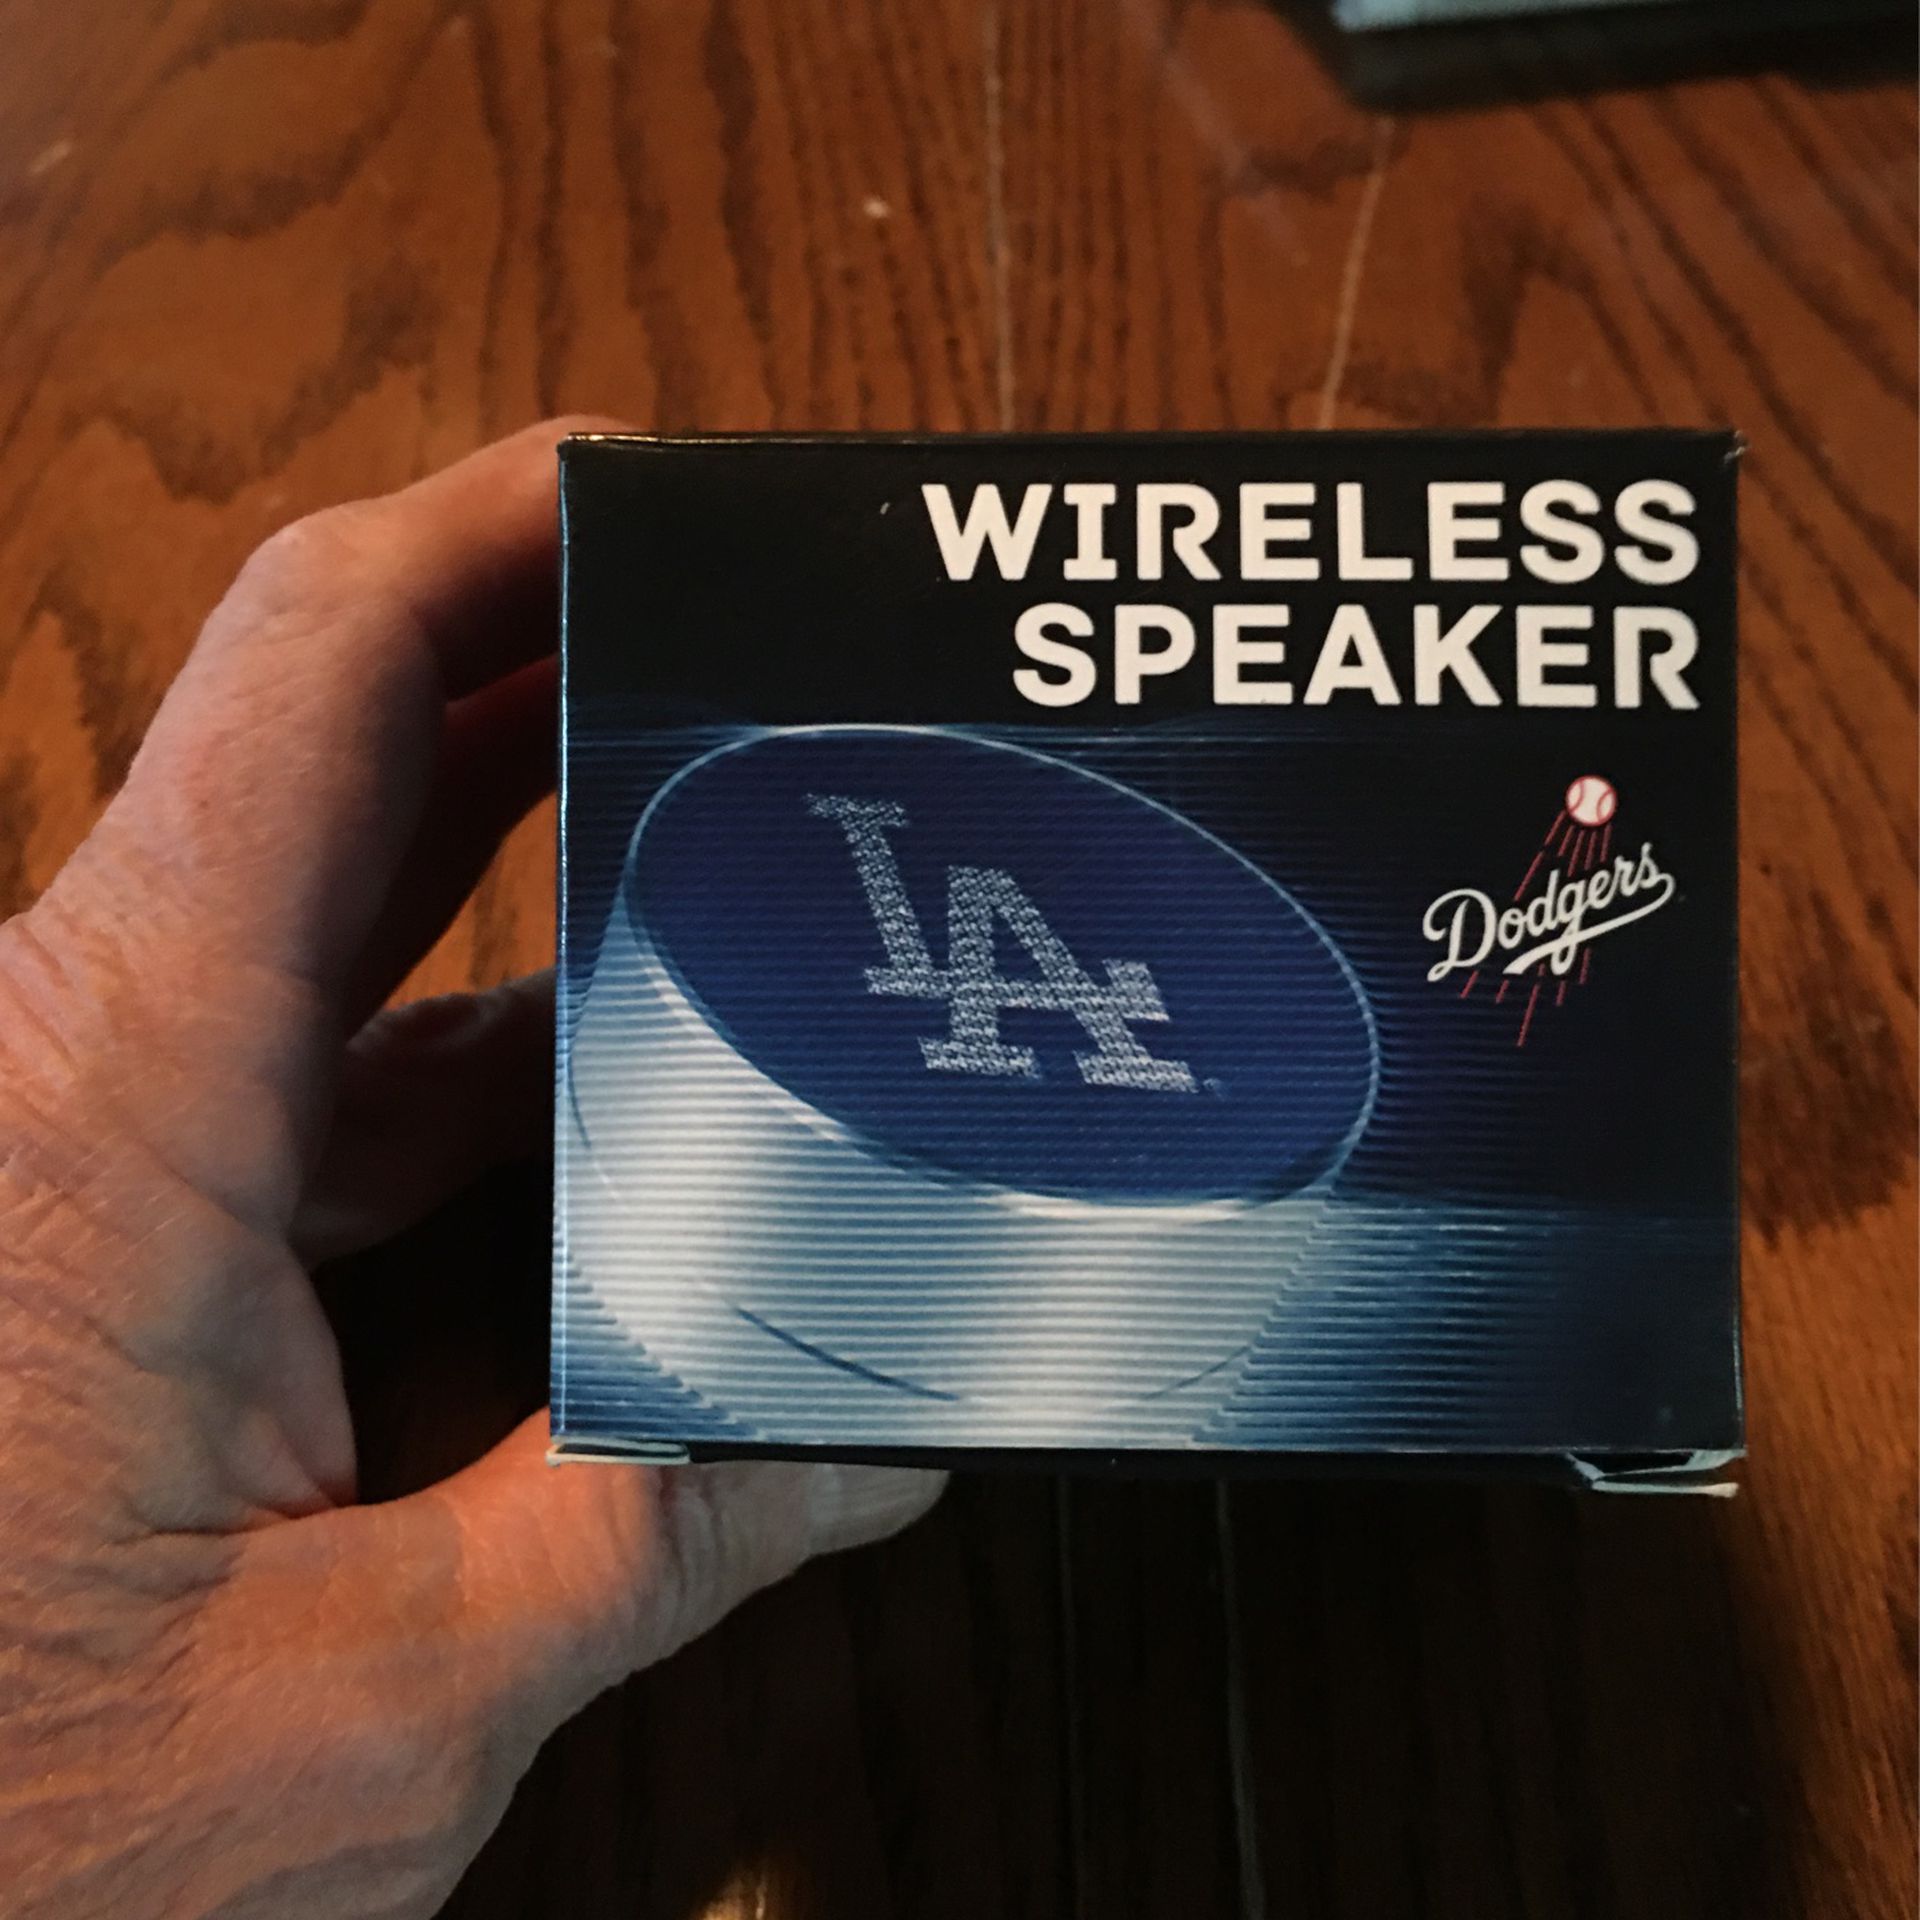 Wireless speaker dodgers